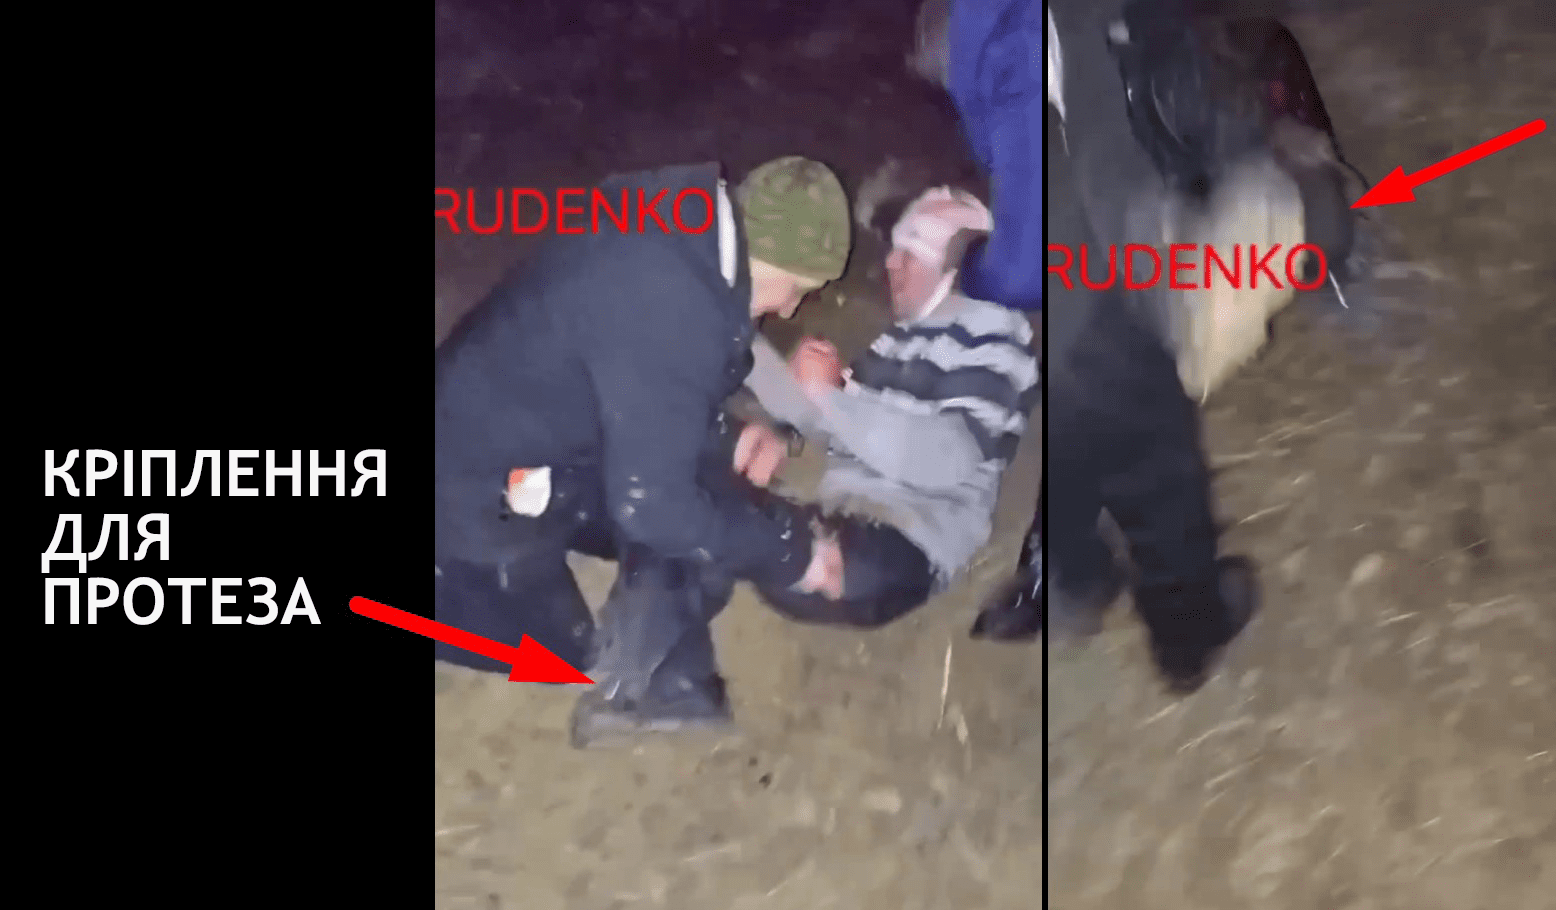 Кадр з відео з фейковим пораненим від "Репортер Руденко"